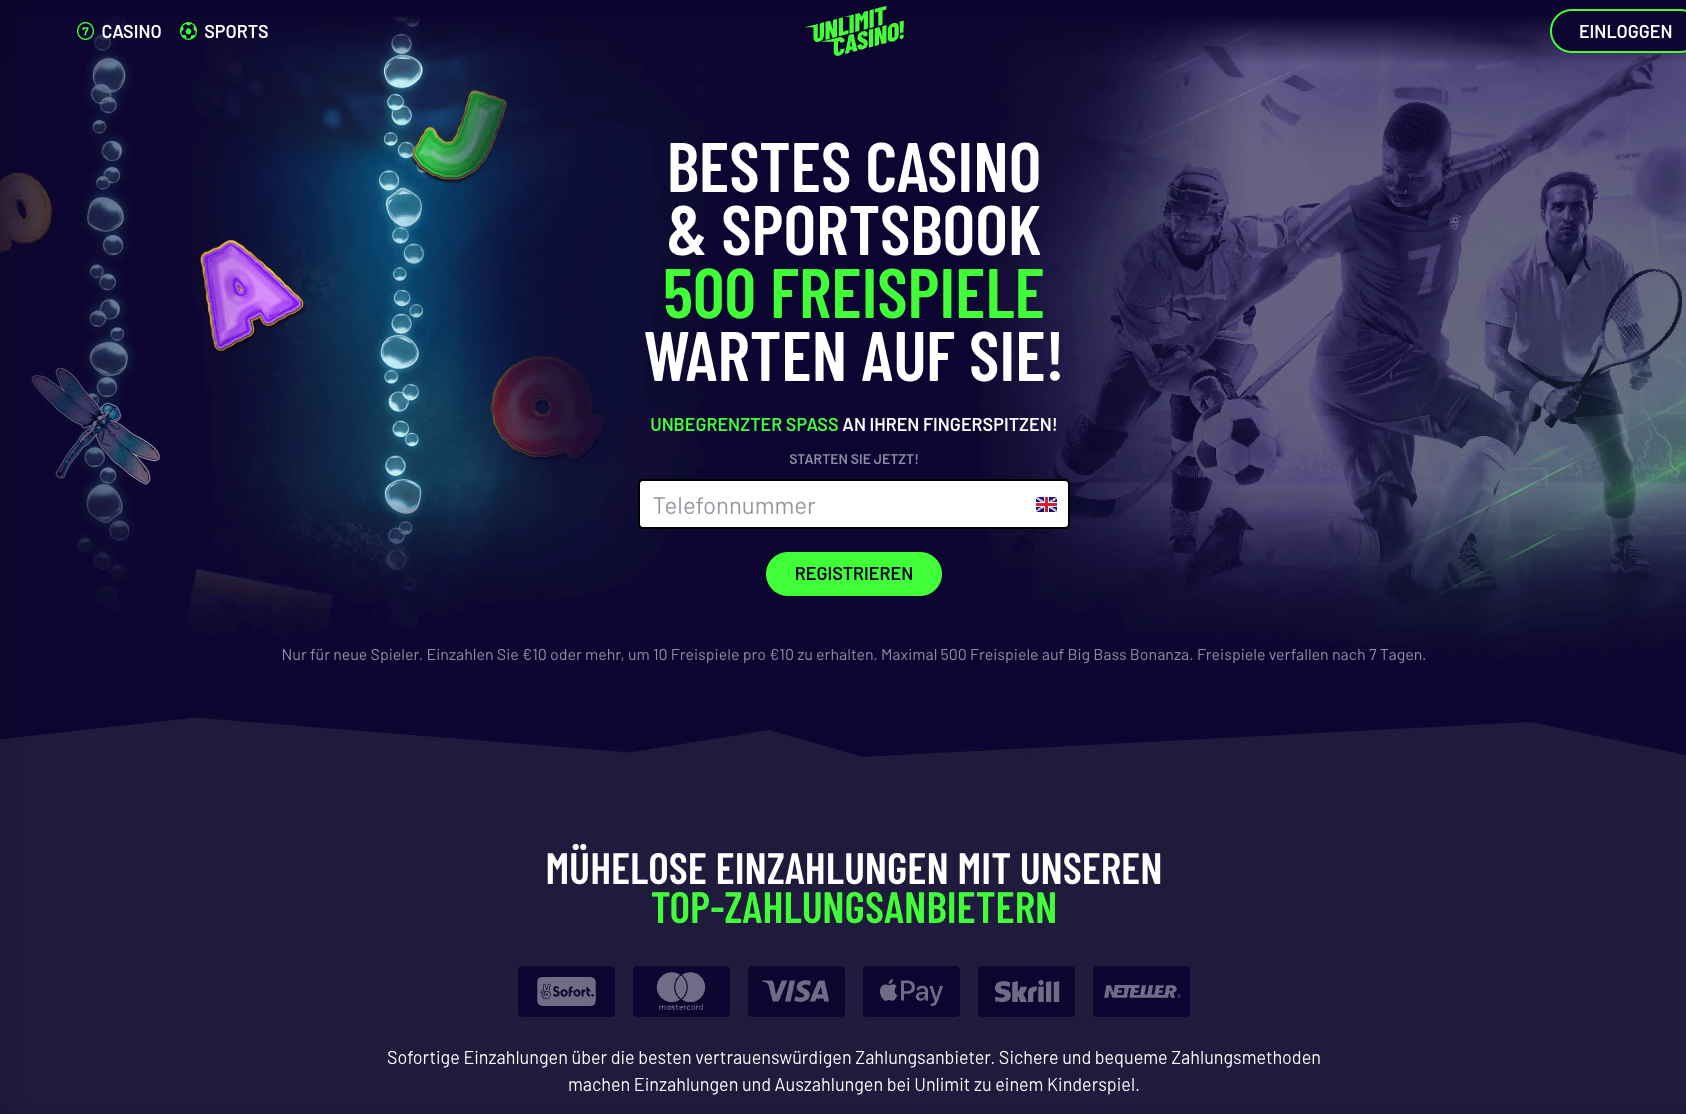 Das Geheimnis eines erfolgreichen Bestes Online Casino Schweiz